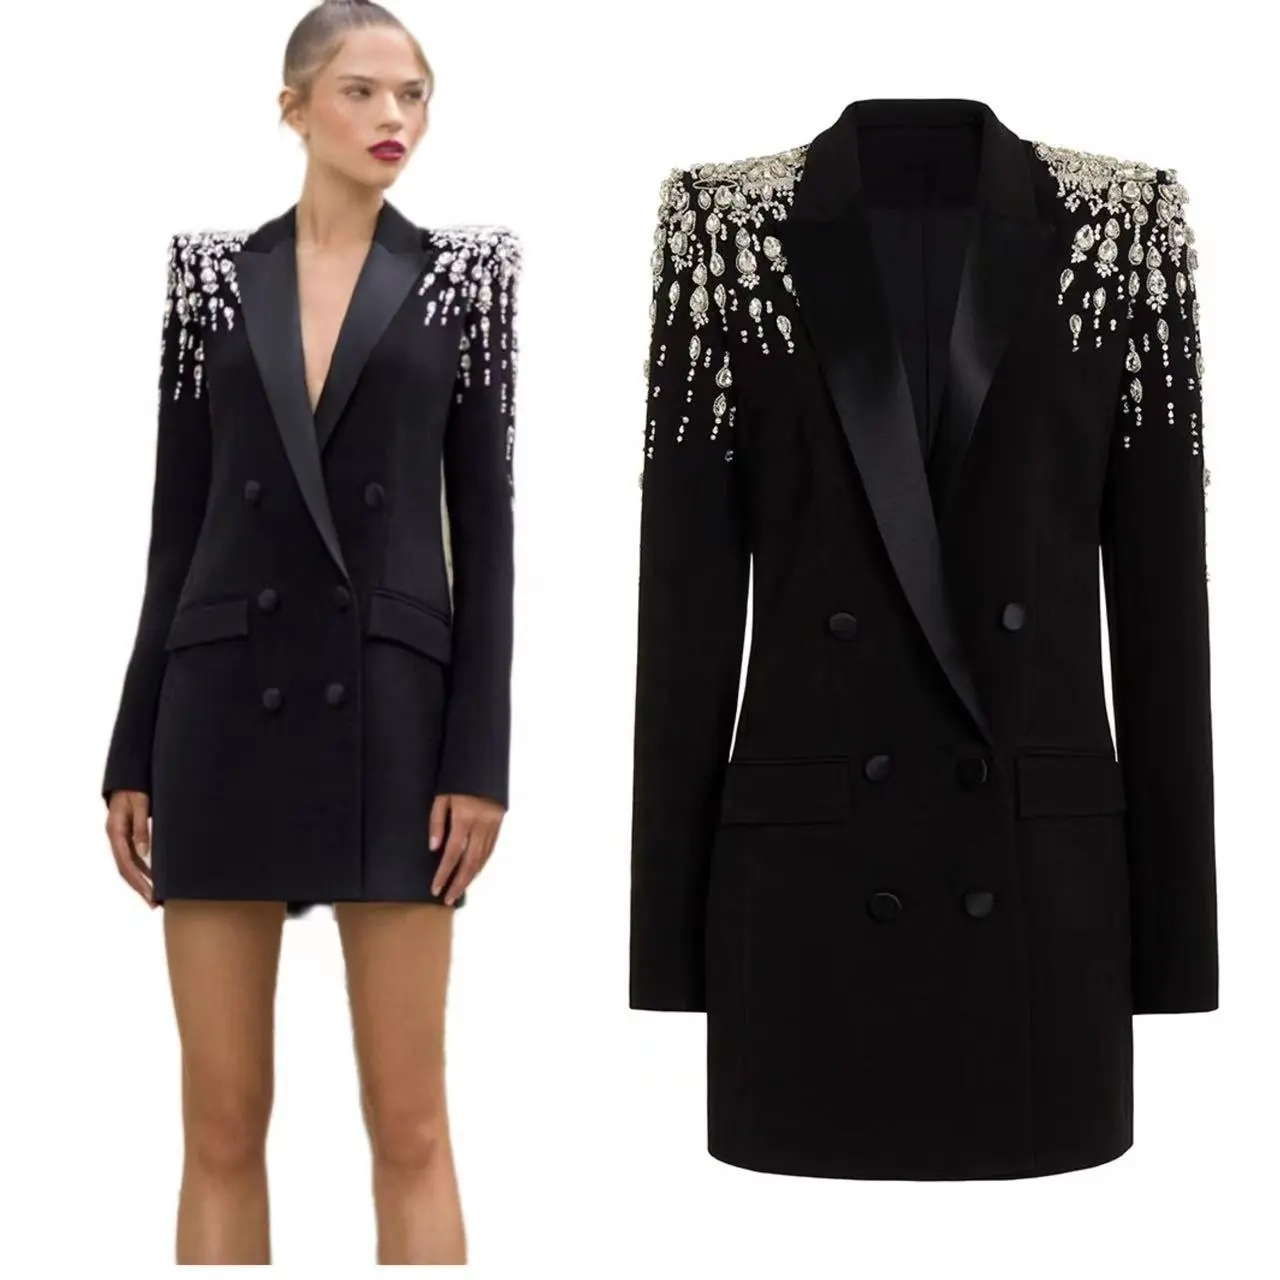 Gaun blazer wol berlian imitasi kualitas tinggi gaun jaket manik-manik mewah pesta malam formal